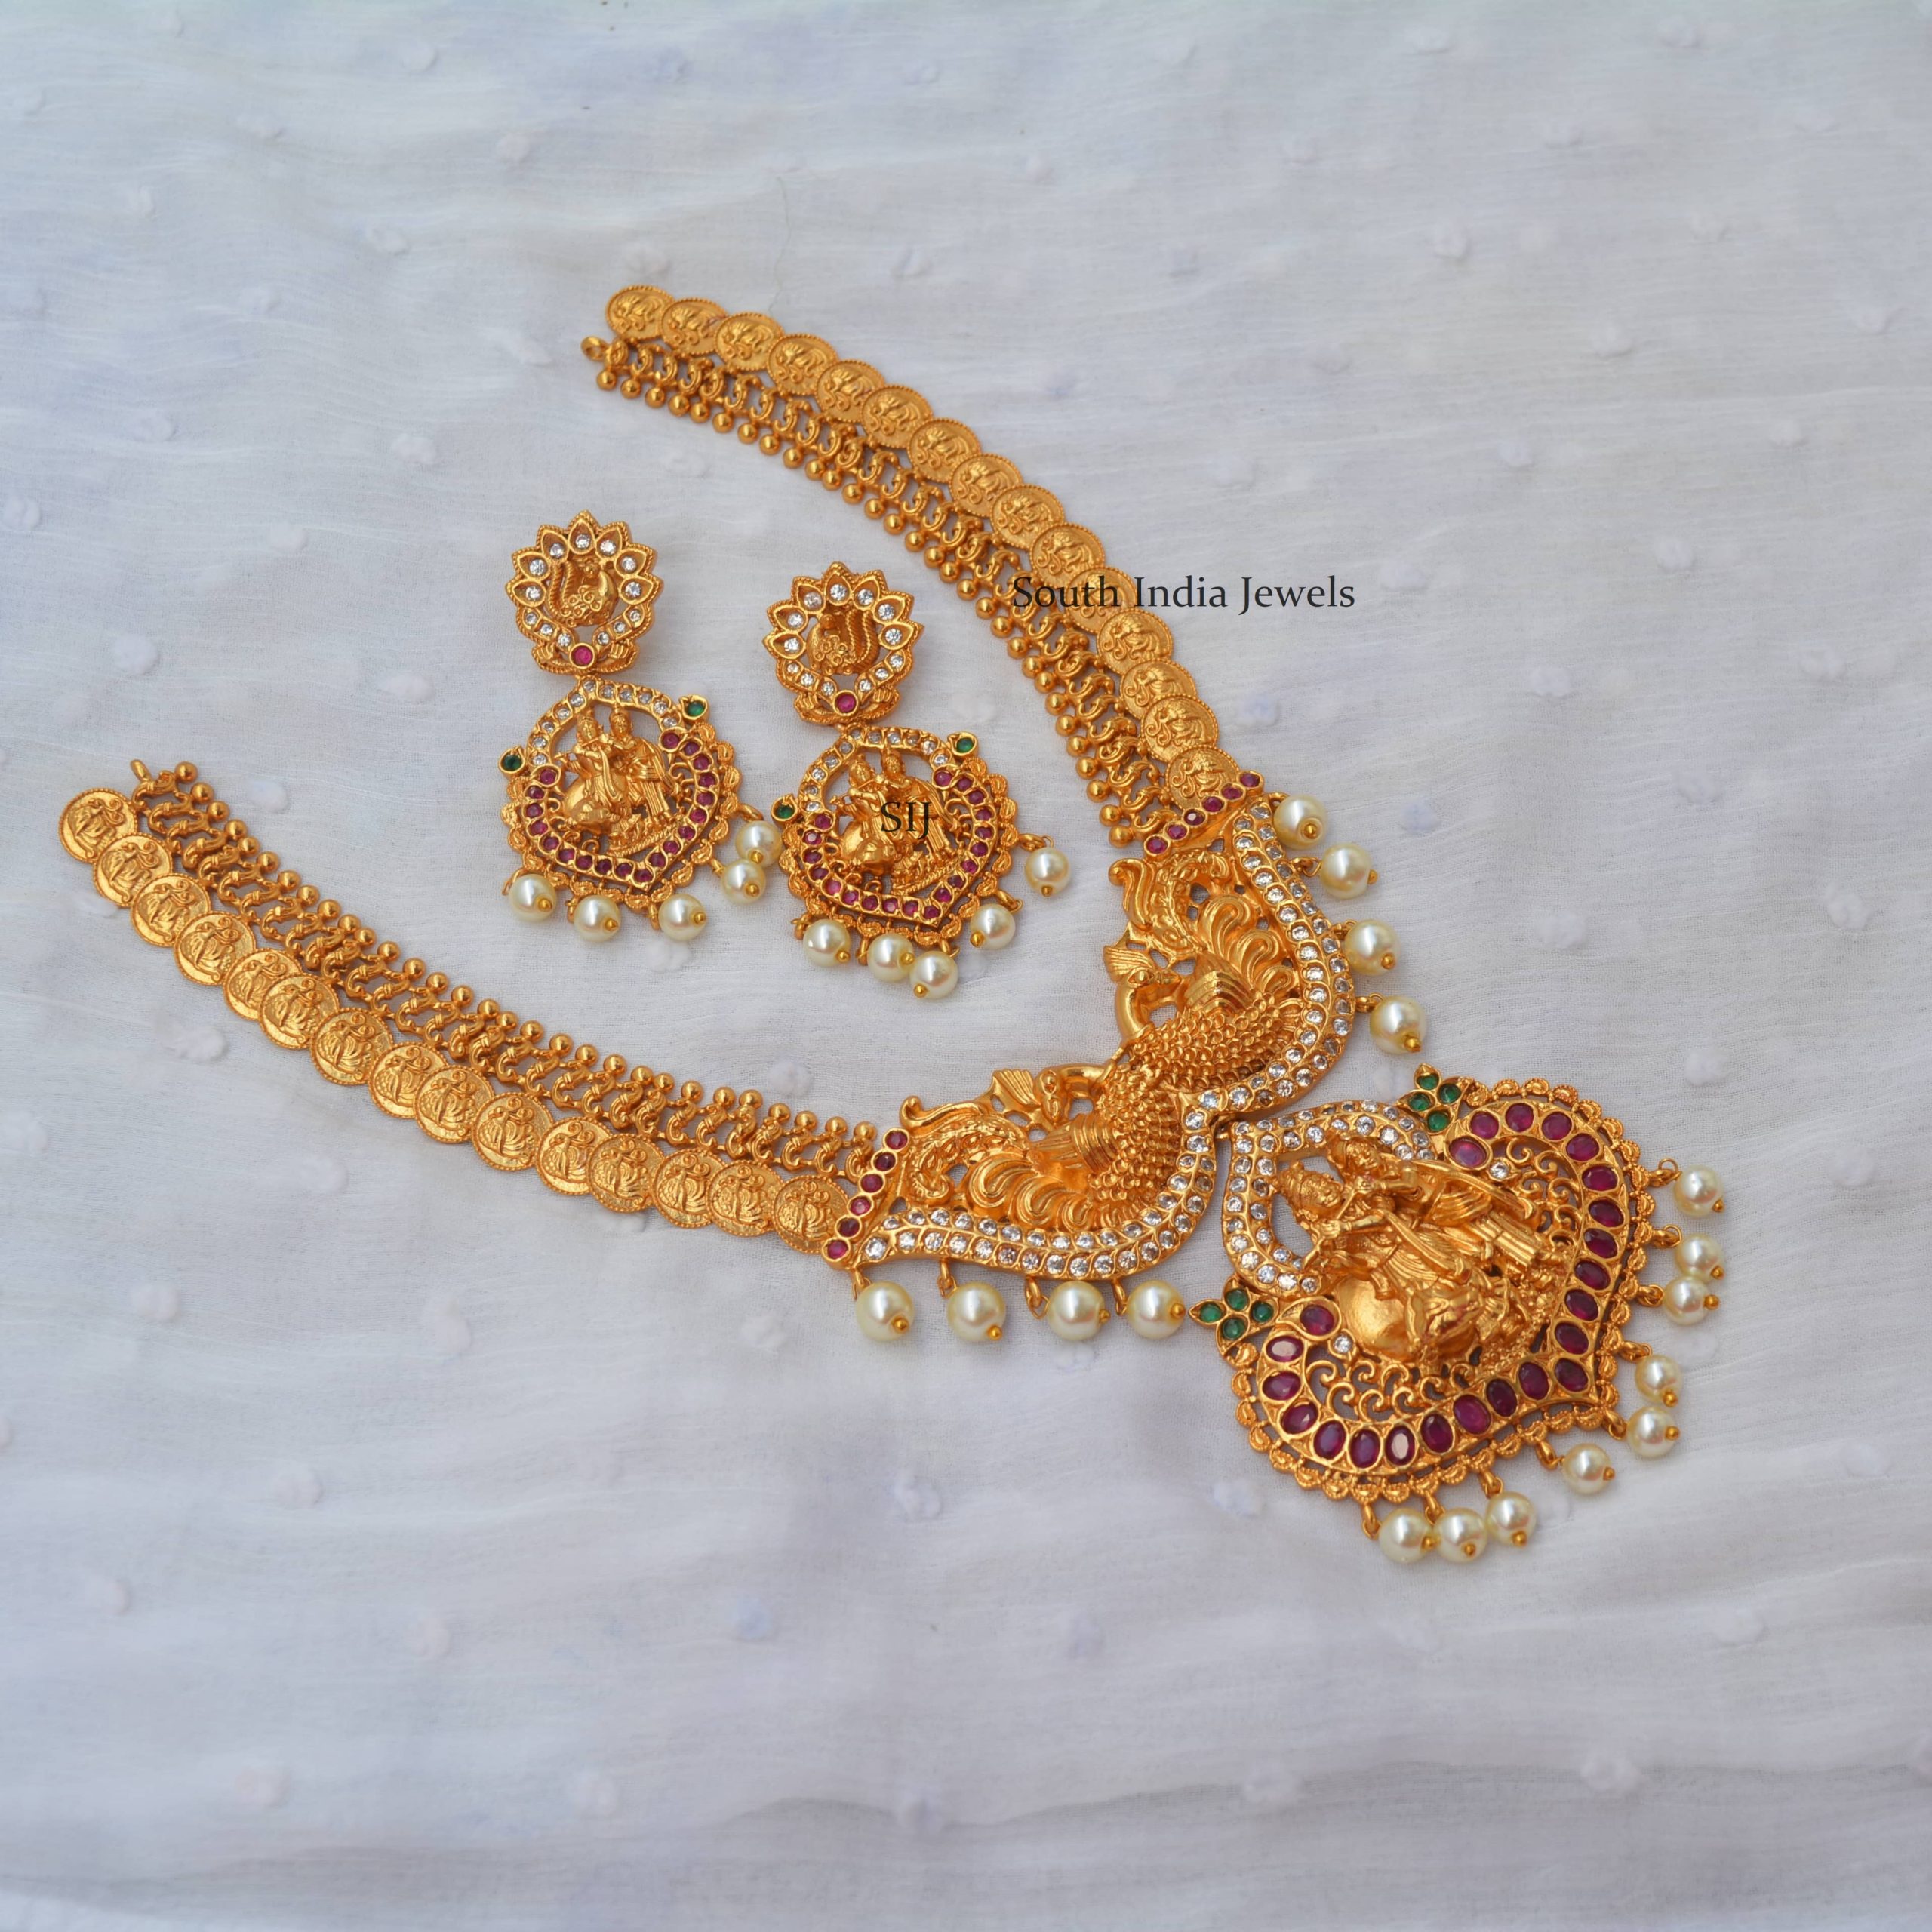 Gorgeous Radha Krishna Necklace